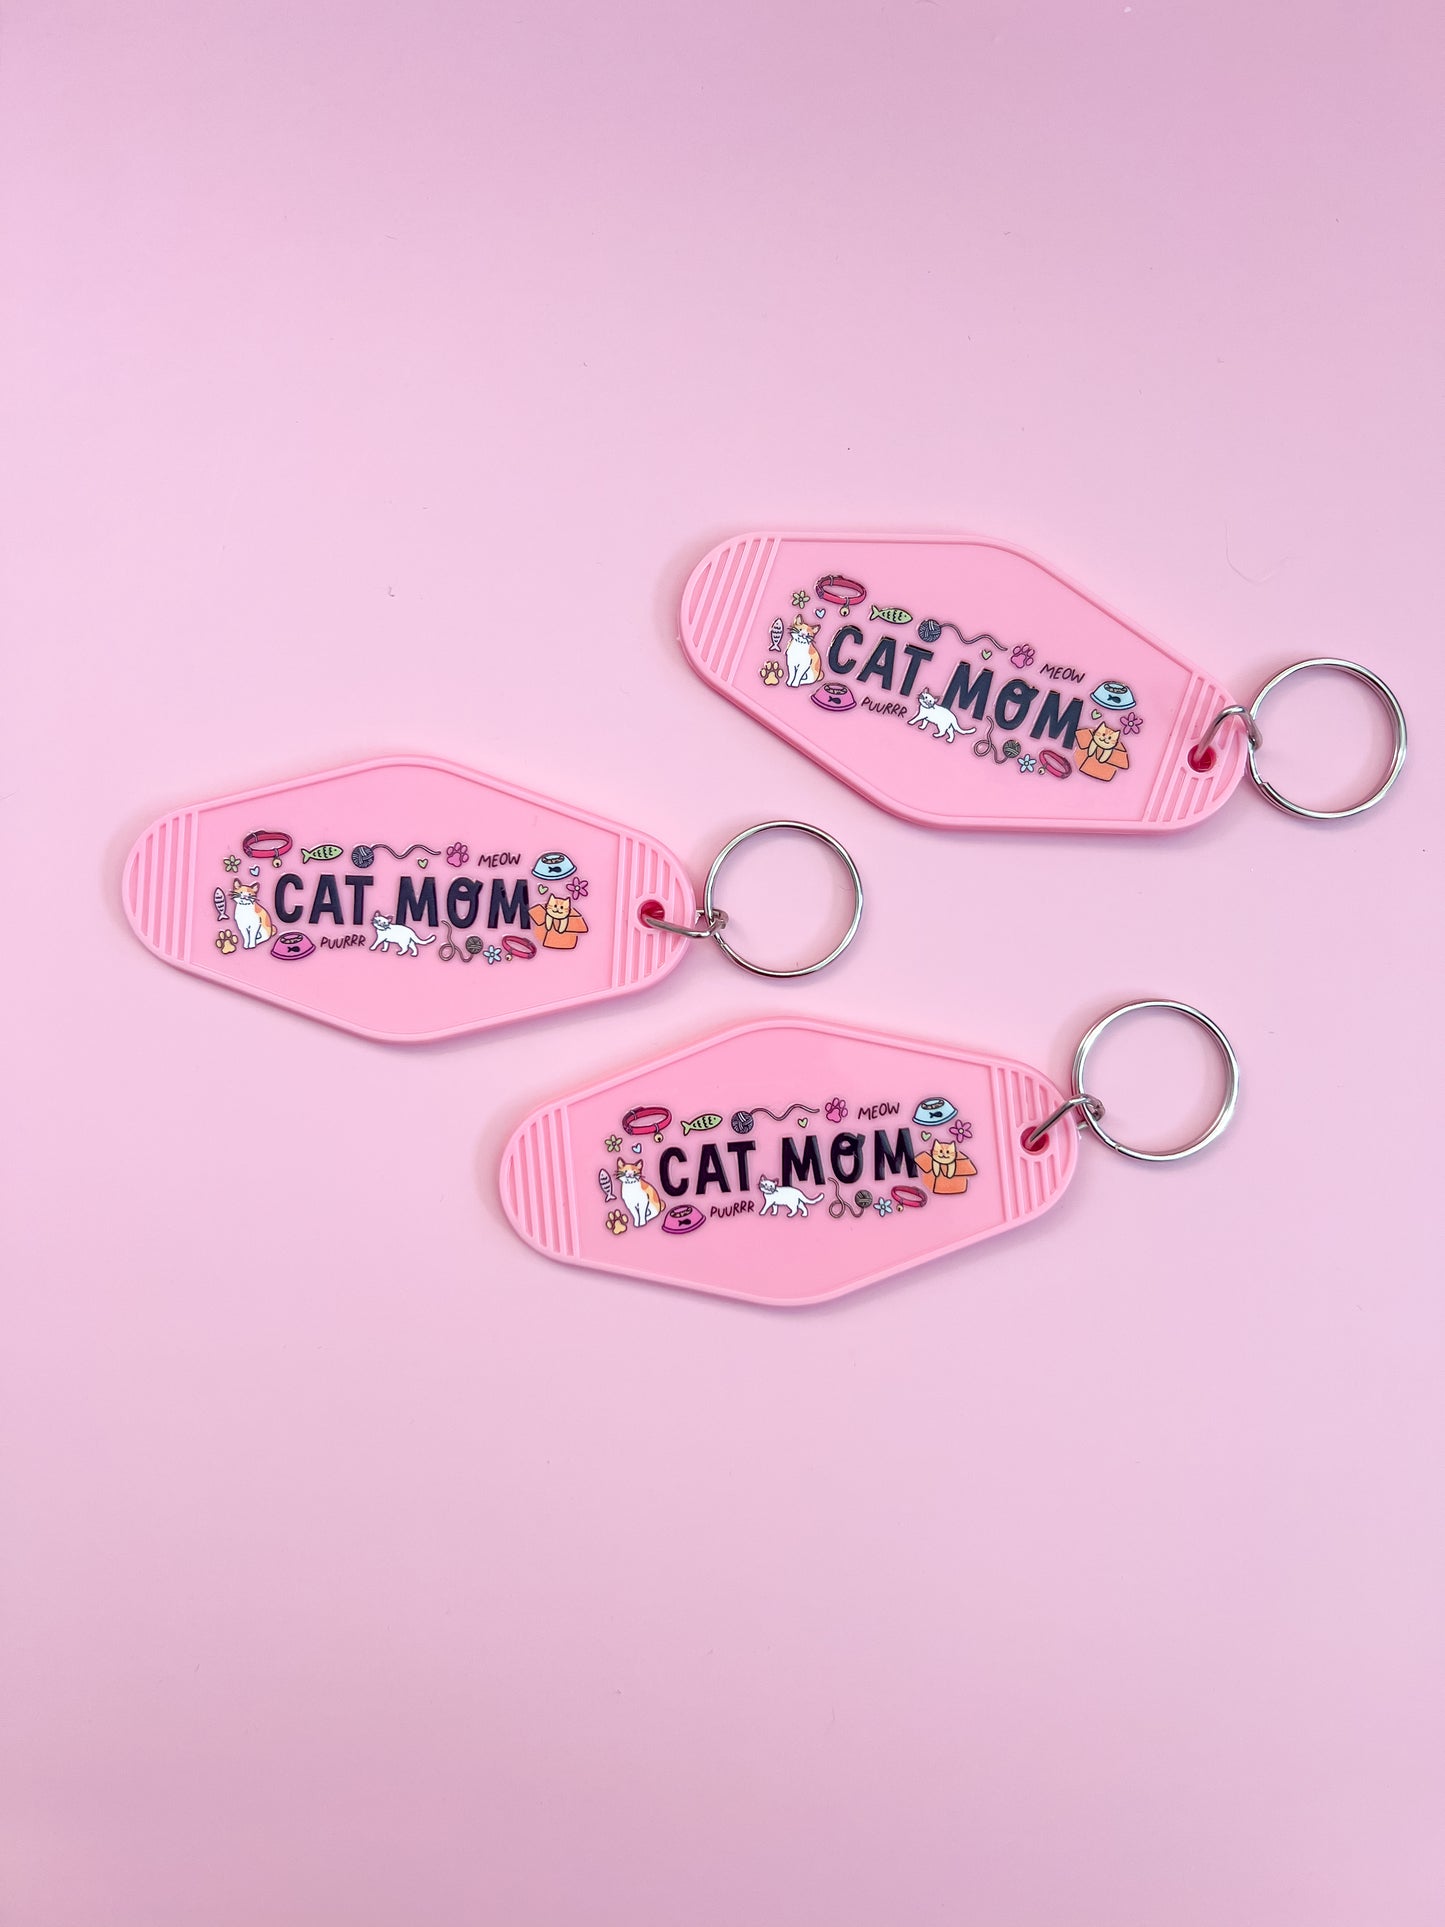 Cat Mom Motel Keychain